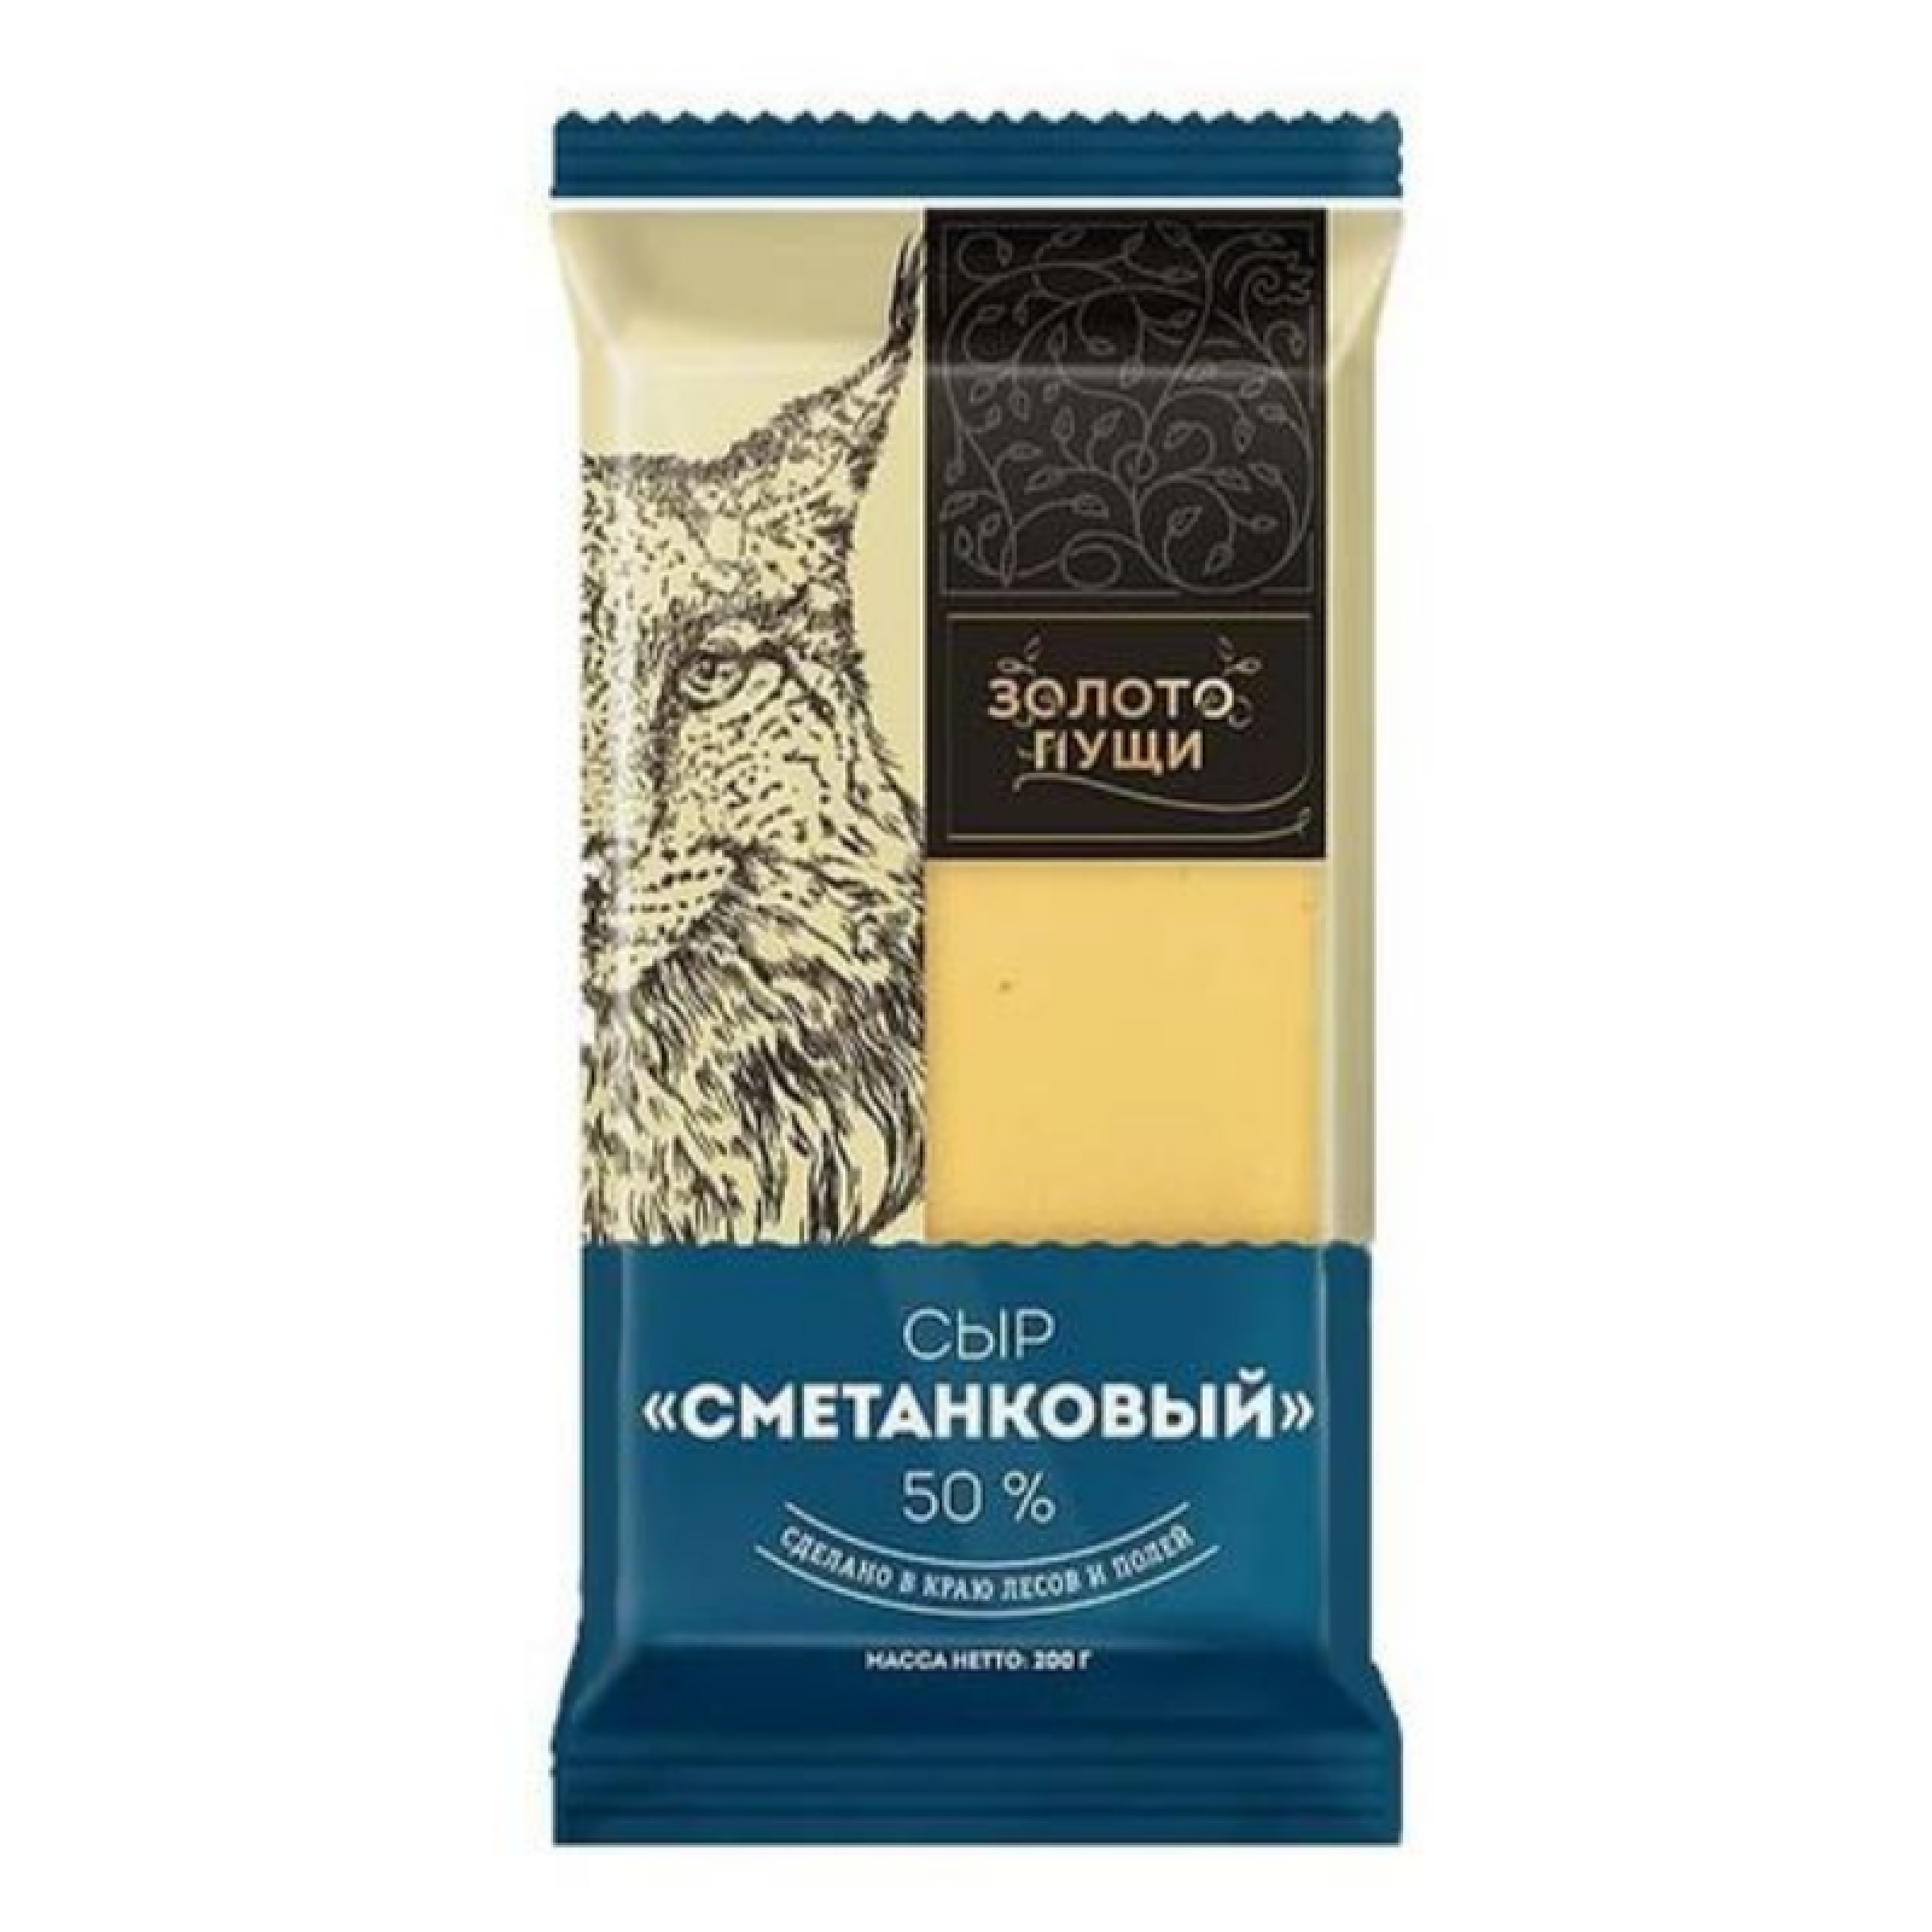 Сыр Сметанковый Золото Пущи 50%, 200 г